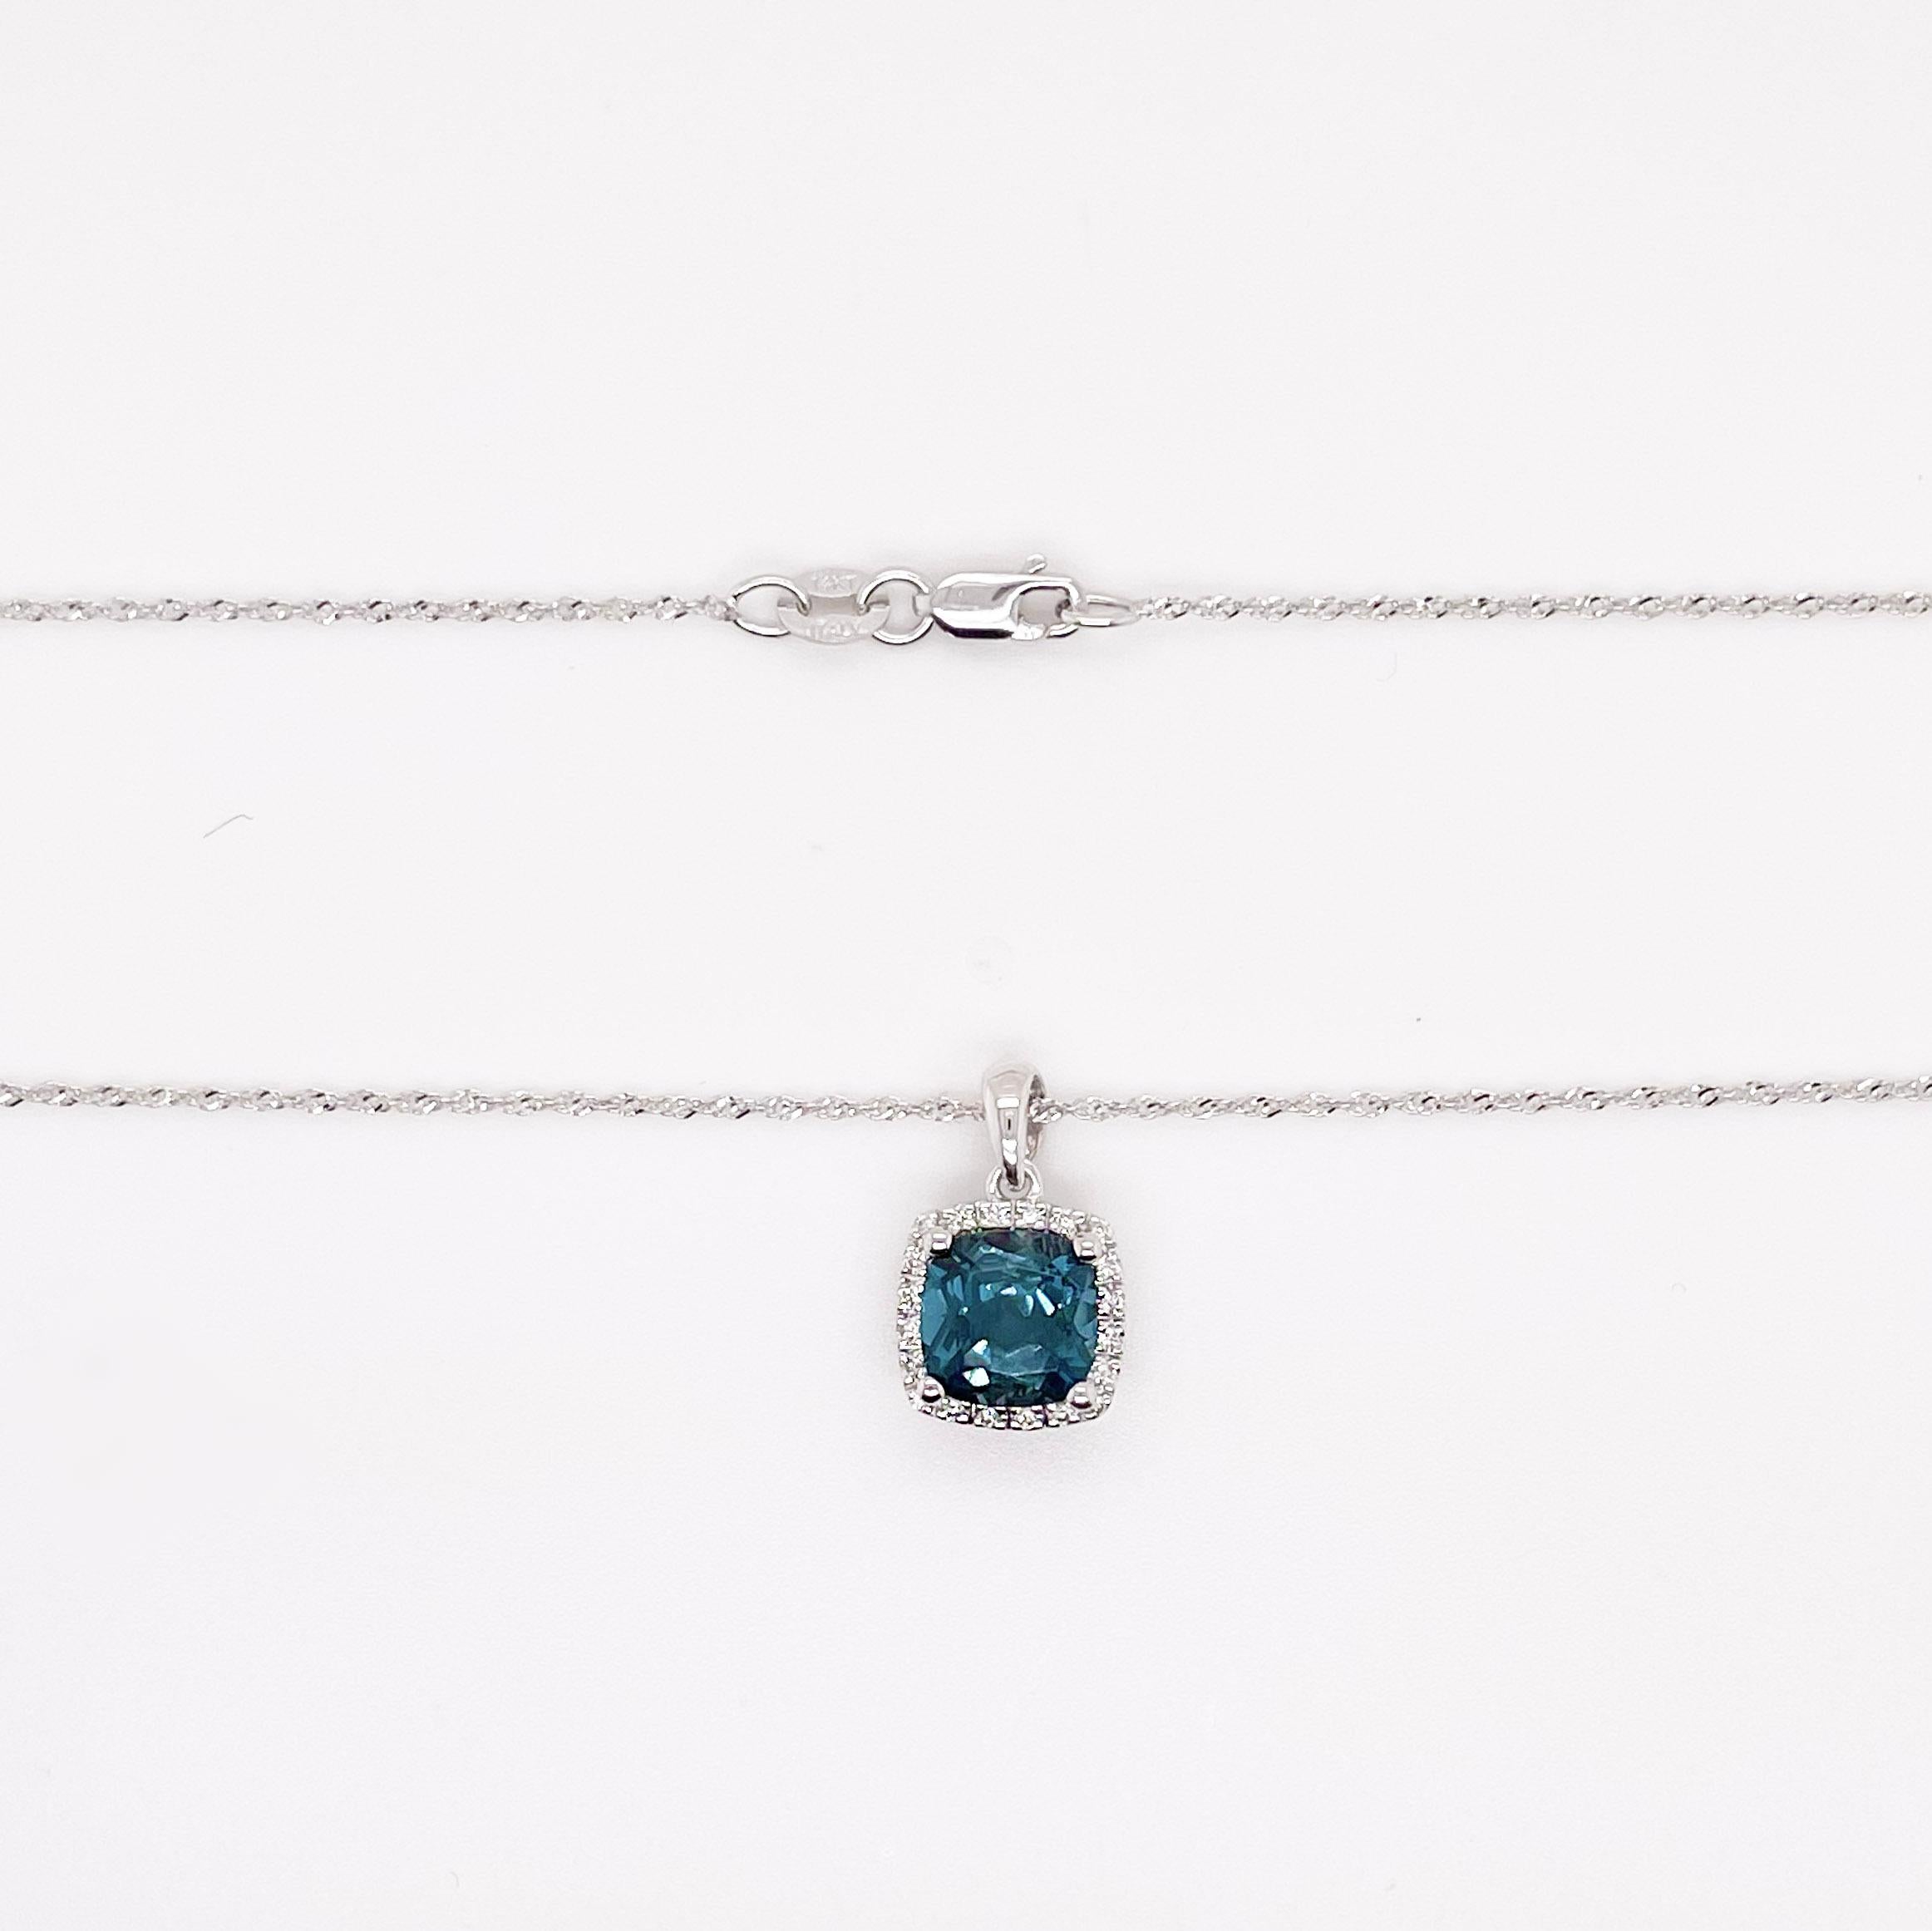 Dieser kissenförmige mitternachtsblaue Topas hat eine unglaublich lebendige Farbe, die durch den Diamantenhalo noch schöner wird. Der Anhänger passt perfekt zu der zarten Baby-Seilkette, an der er hängt. Diese Halskette wäre das perfekte Geschenk